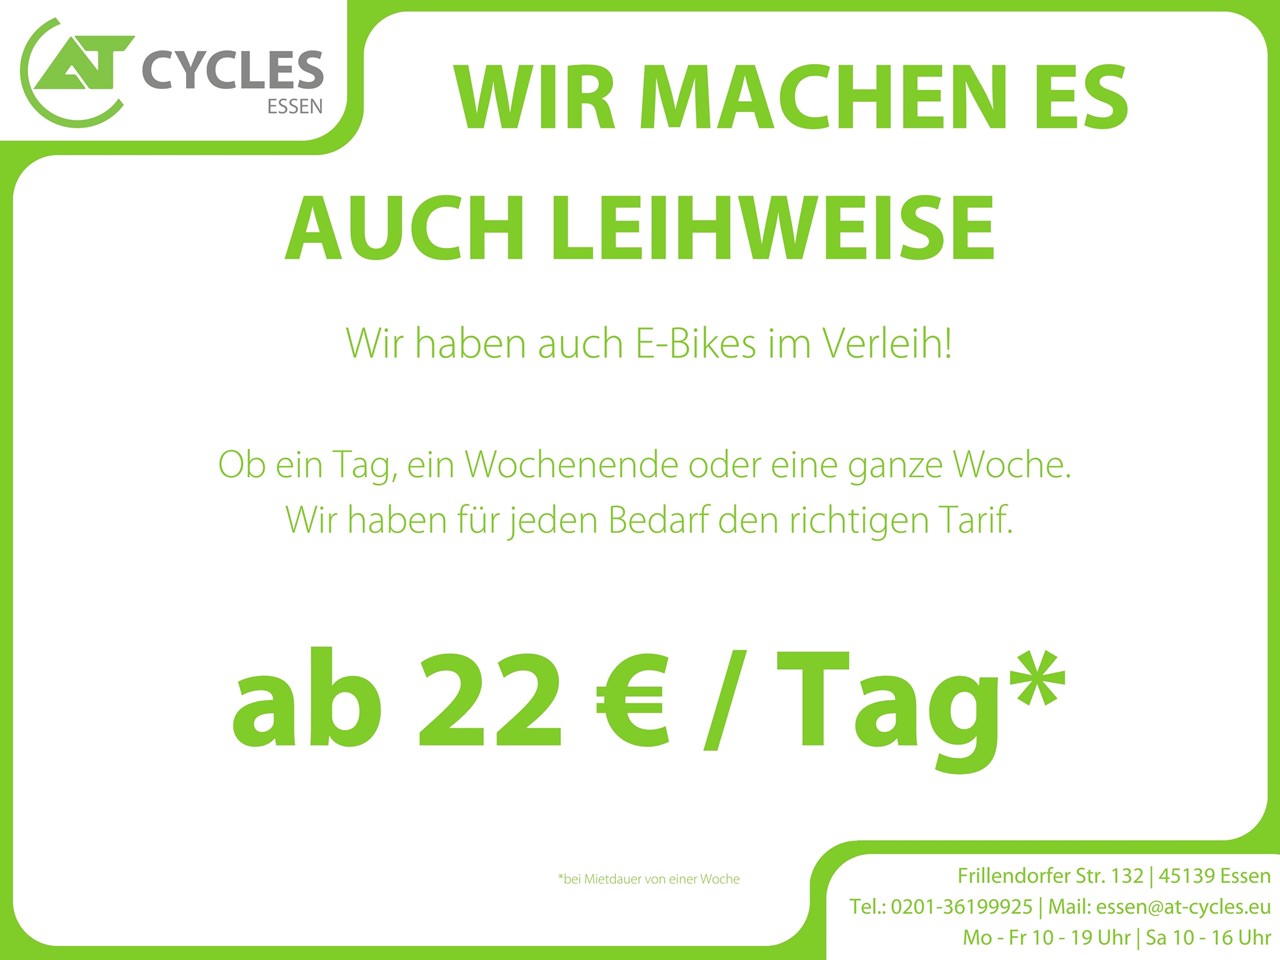 AT Cycles Essen GmbH Fahrrad mieten Unsere Leigebühren